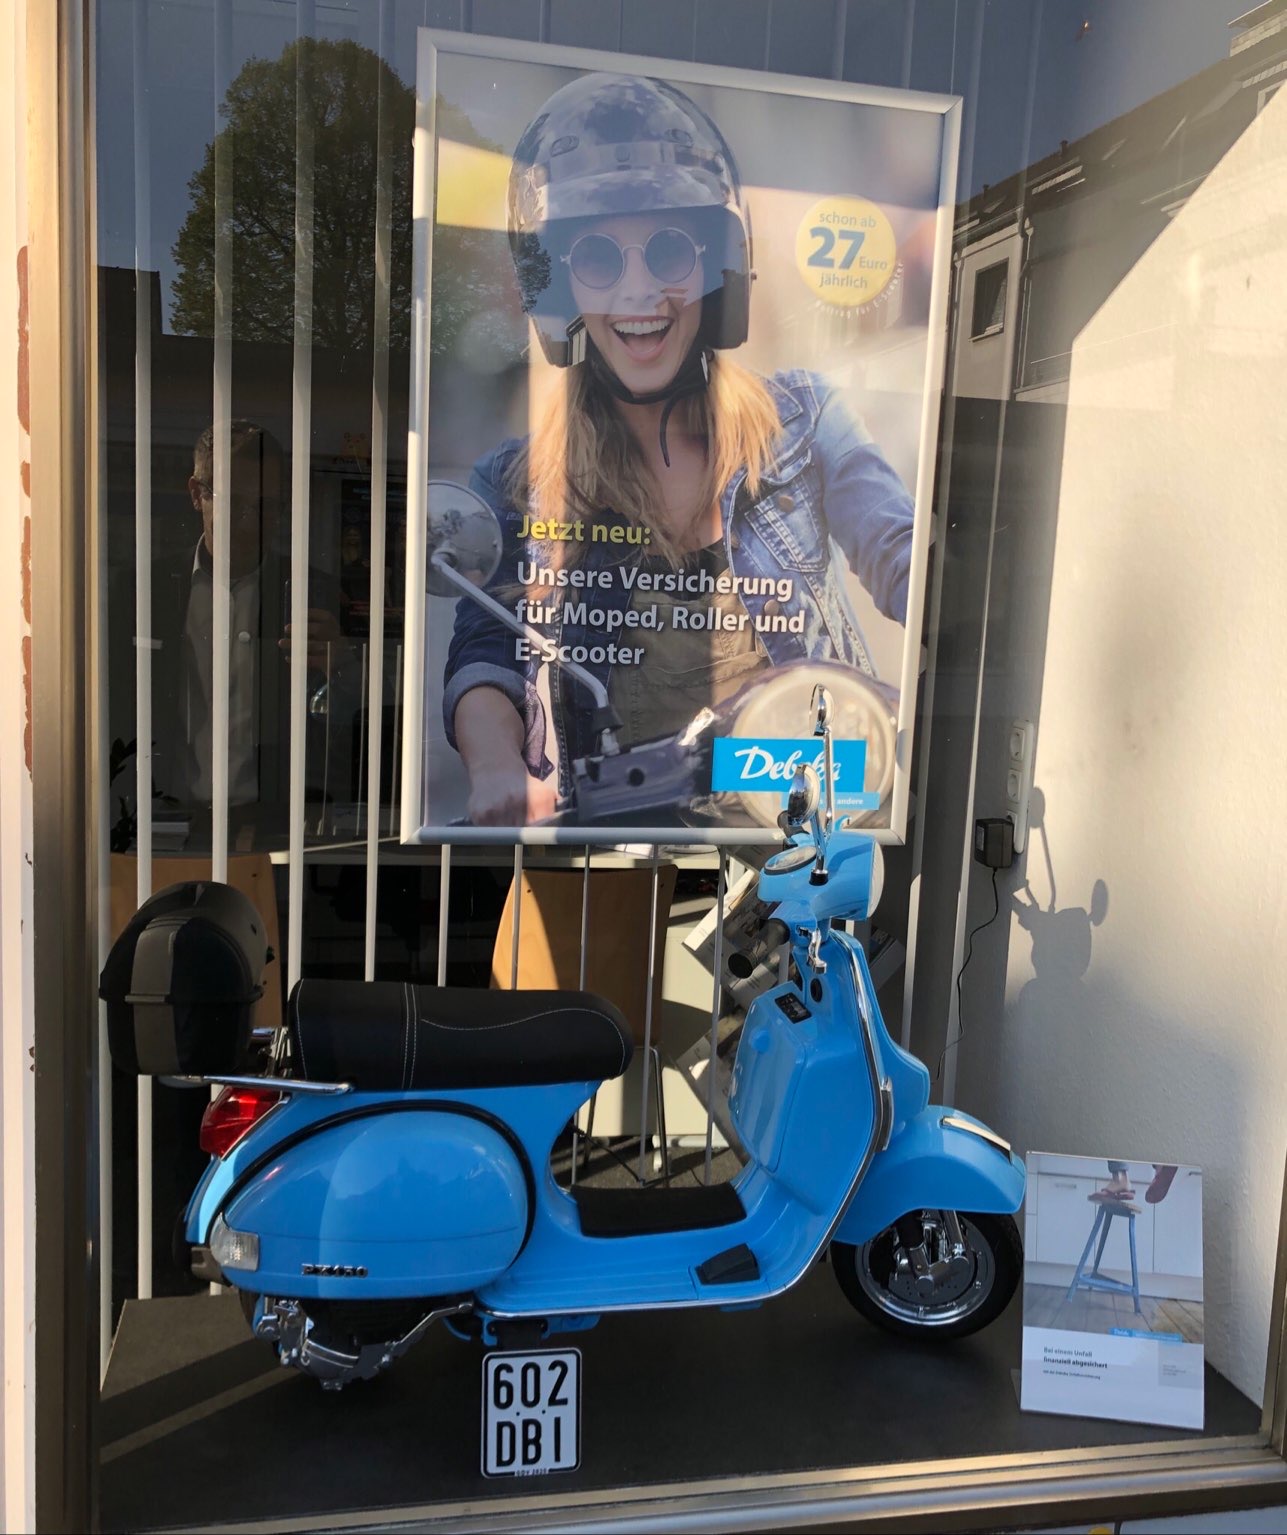 Unsere Versicherung für Moped, Roller oder E-Scooter. Hier bei Ihrer Debeka in Köln Höhenhaus.